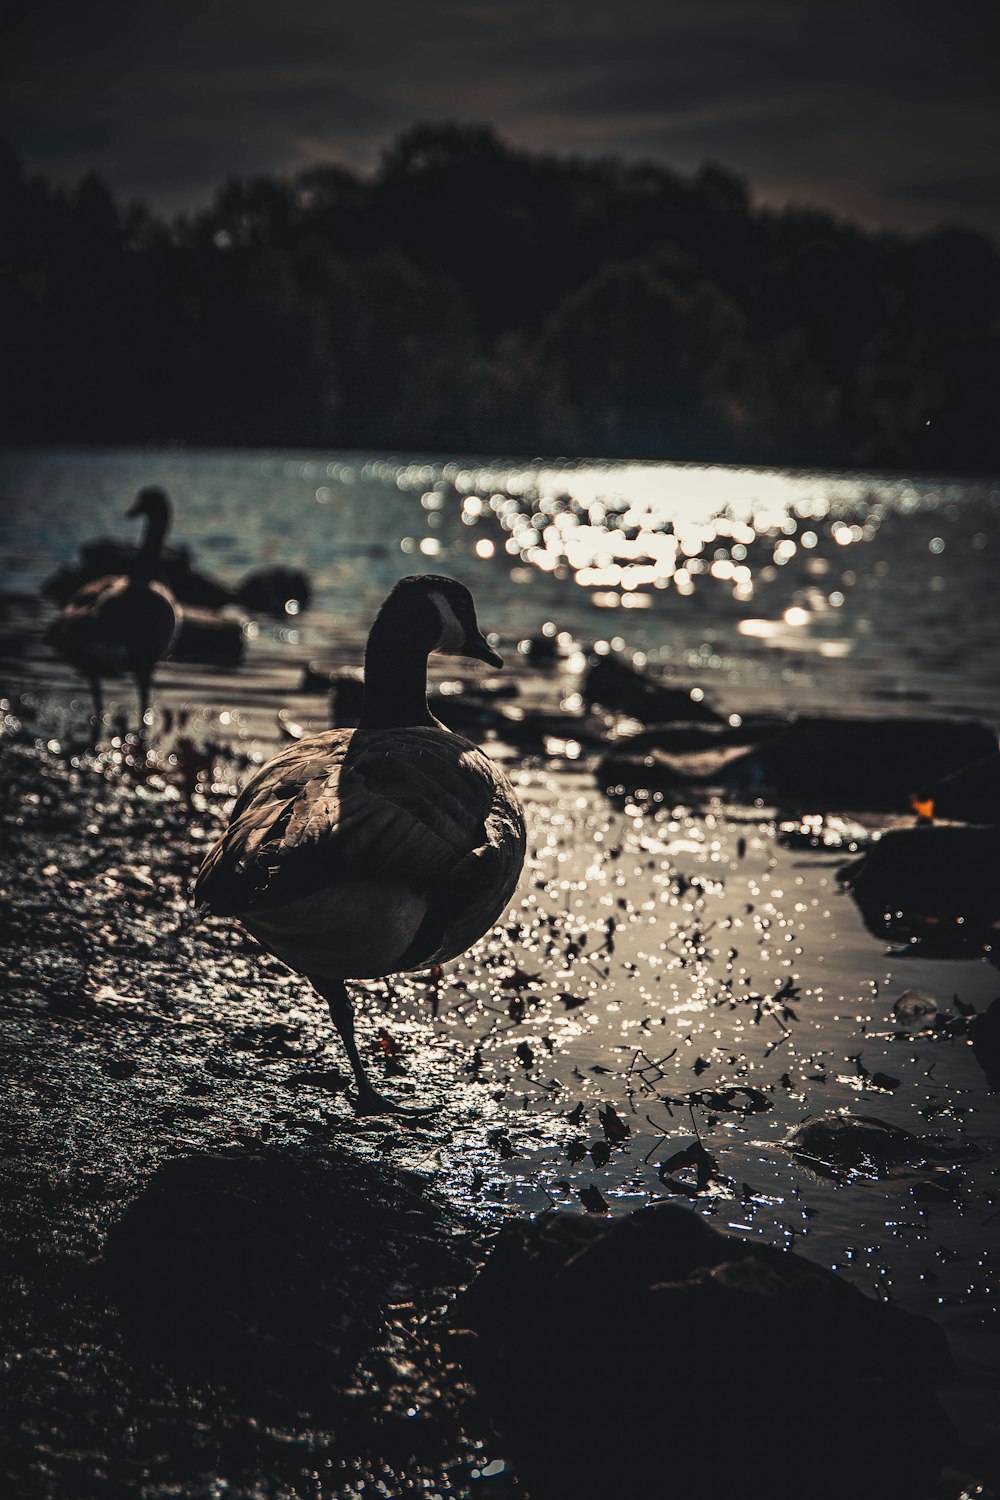 ducks at beach